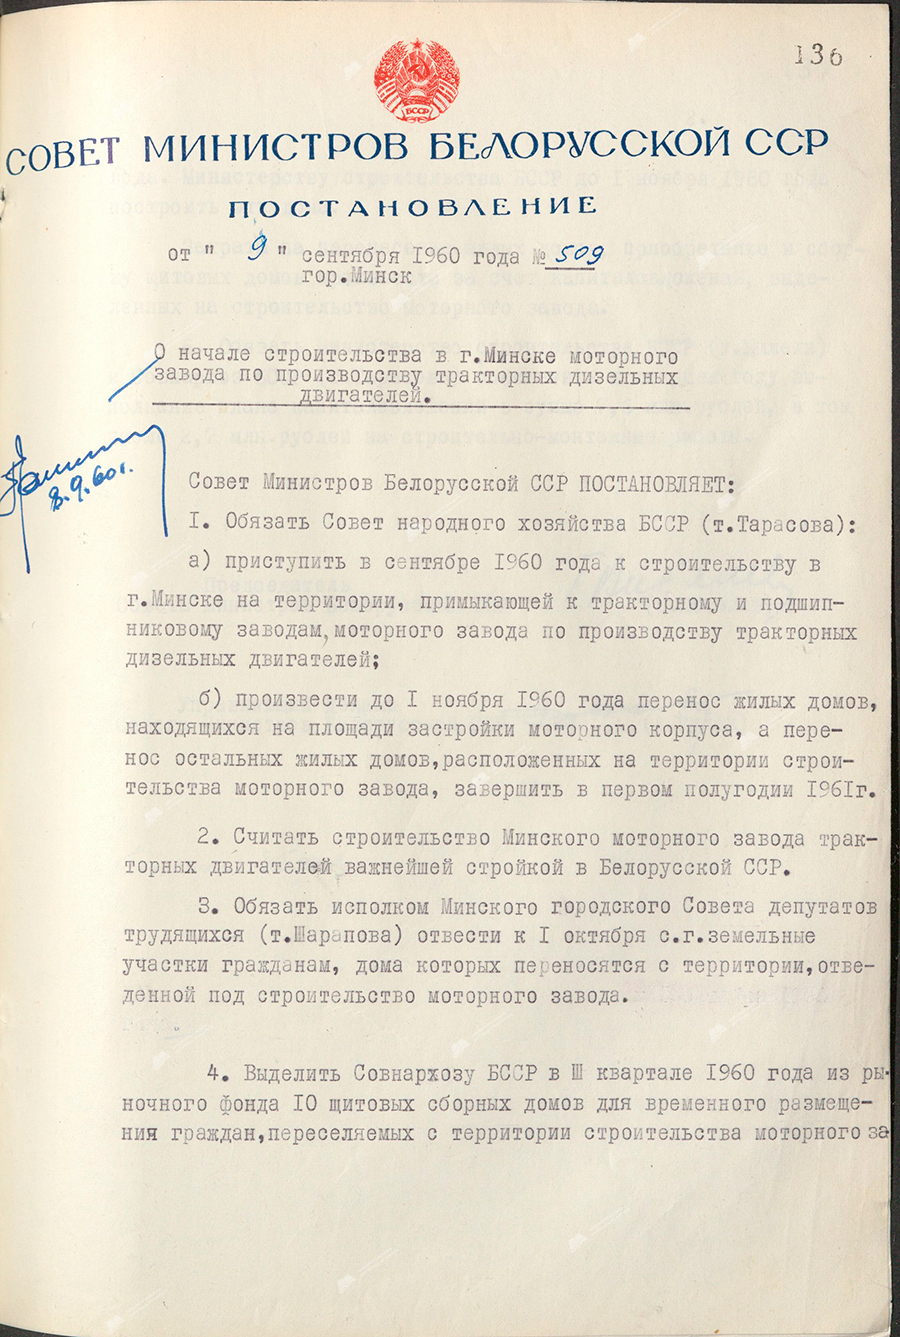 Beschluss Nr. 509 des Ministerrats der BSSR «Über den Baubeginn eines Motorenwerks zur Herstellung von Traktordieselmotoren in Minsk»-стр. 0